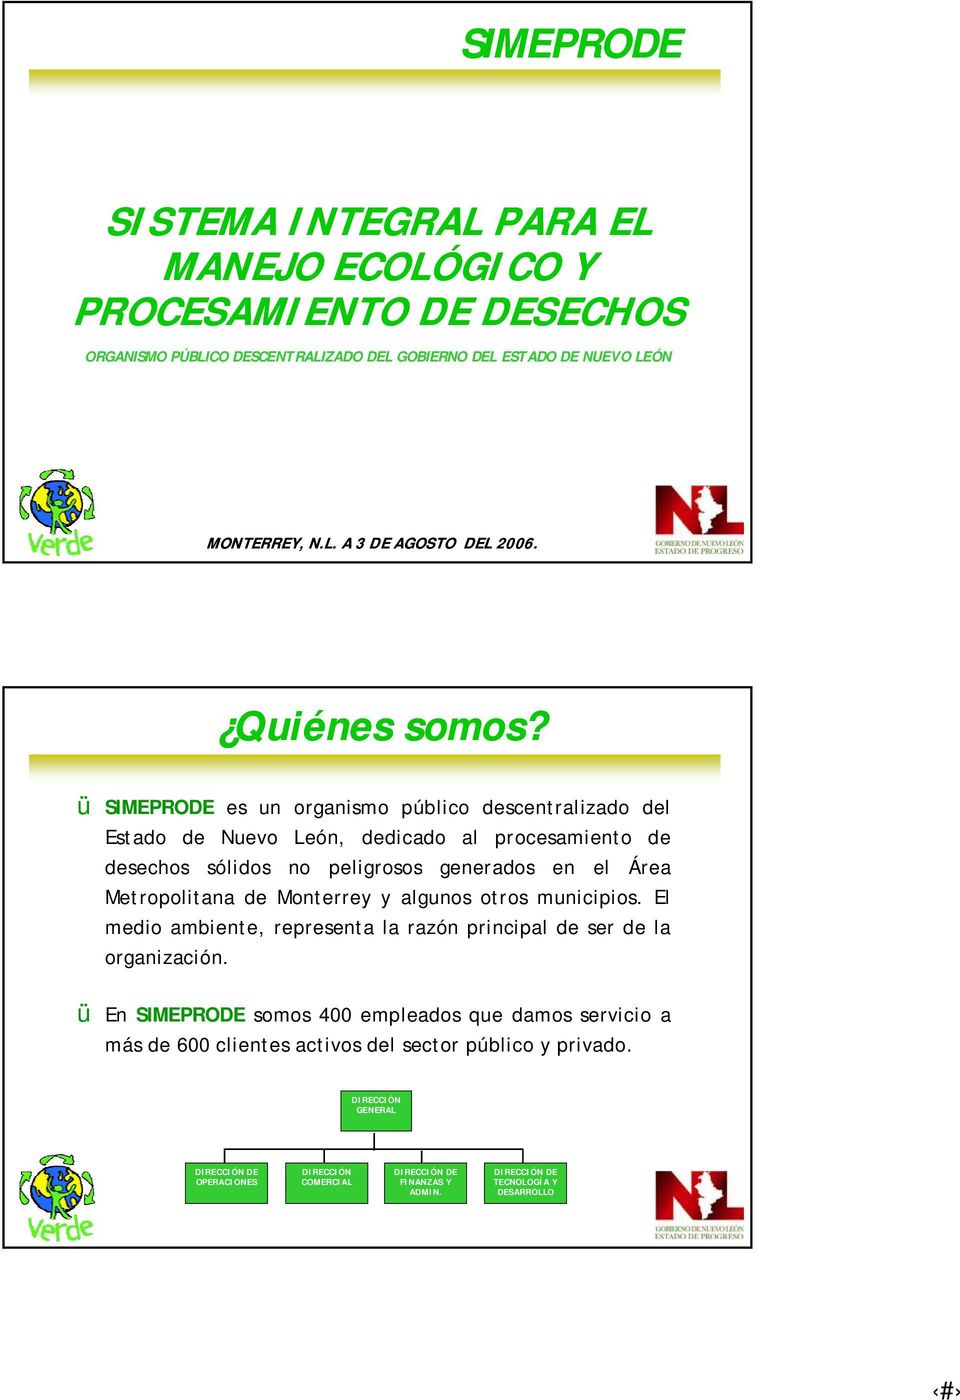 ü SIMEPRODE es un organismo público descentralizado del Estado de Nuevo León, dedicado al procesamiento de desechos sólidos no peligrosos generados en el Área Metropolitana de Monterrey